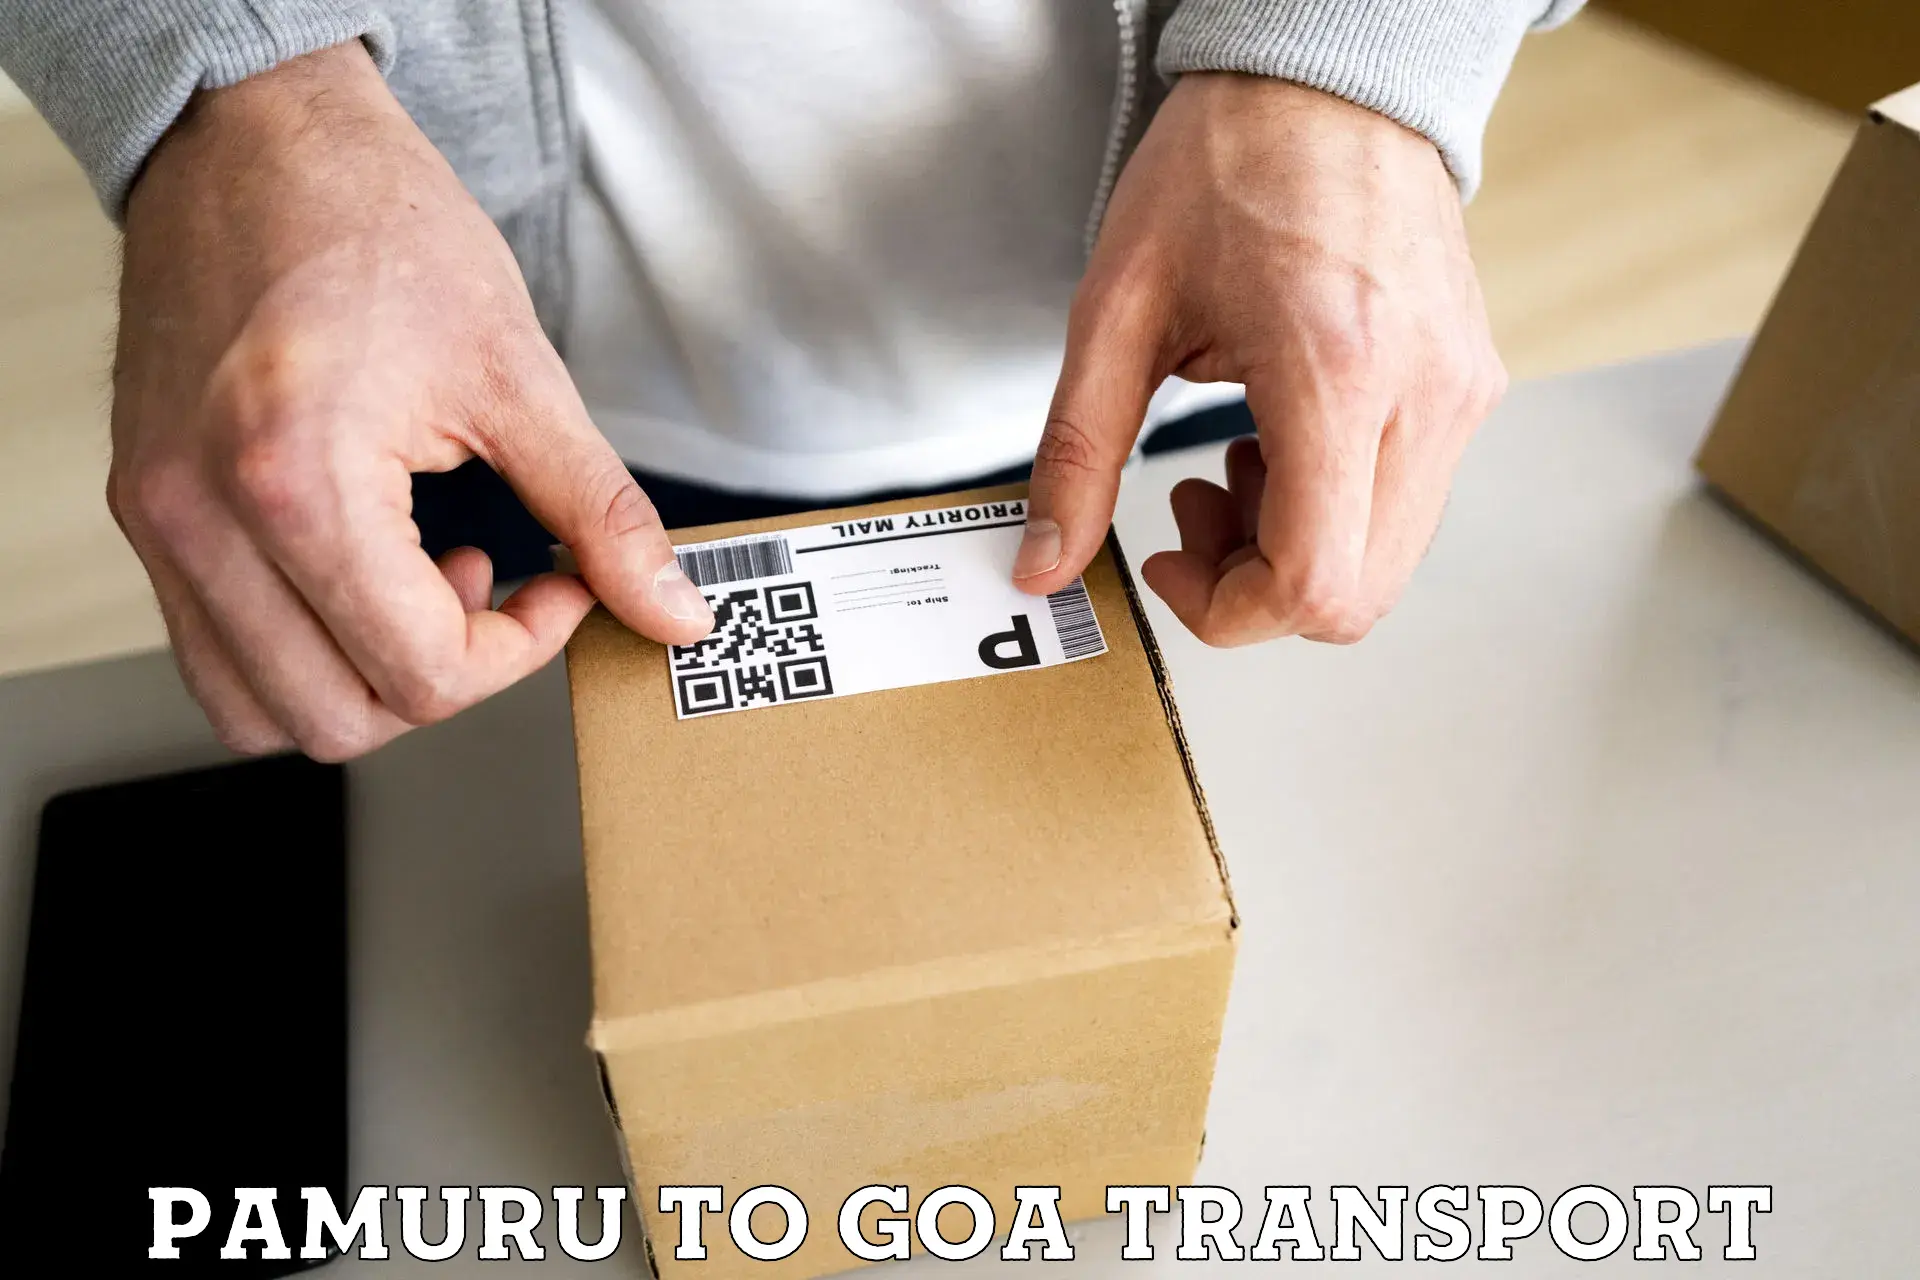 All India transport service Pamuru to Goa